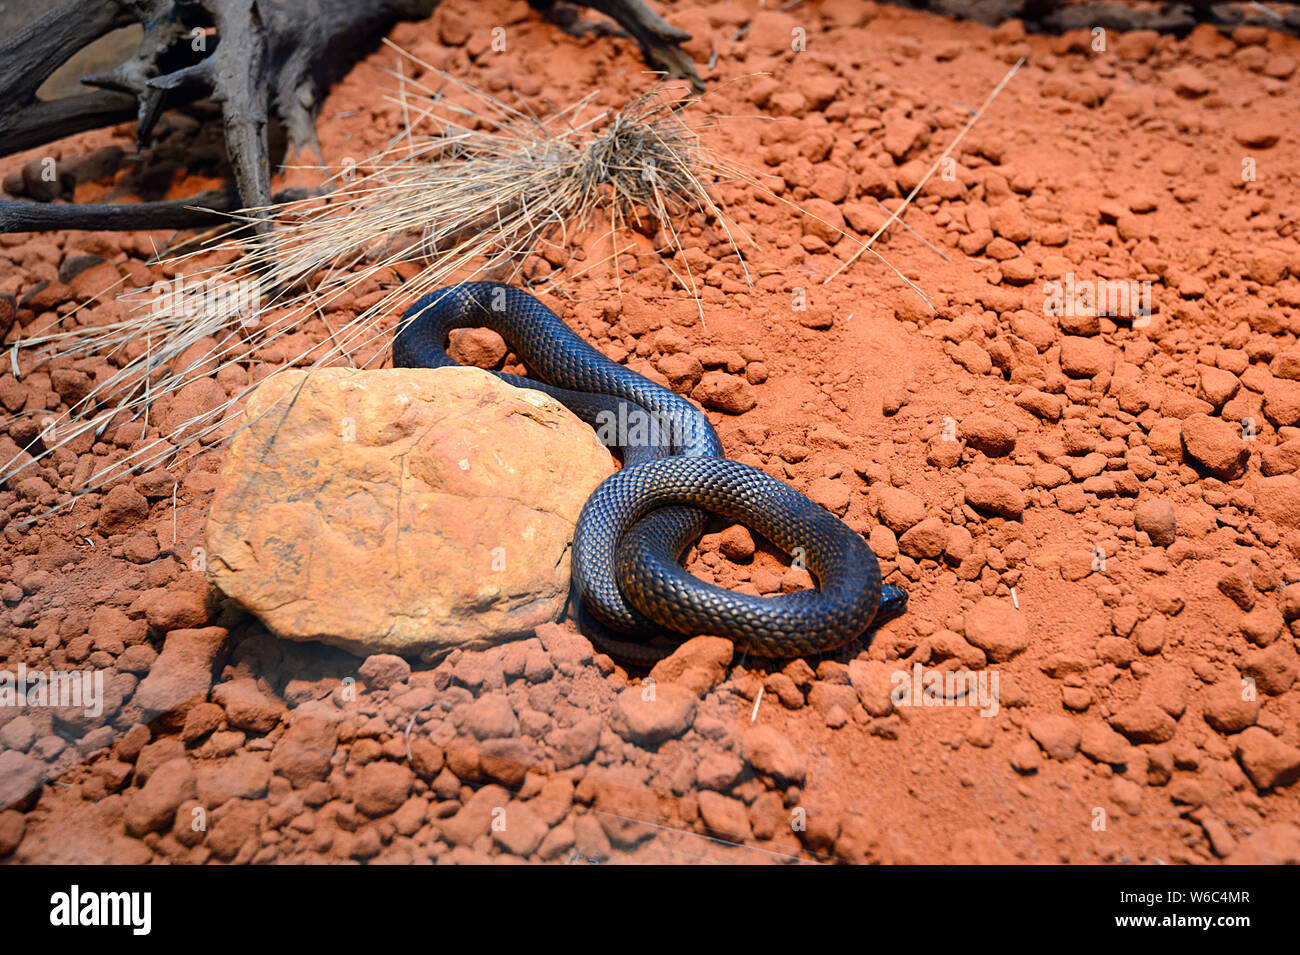 Un serpent brun de l'Ouest (Pseudonaja nuchalis) originaire de l'Australie Banque D'Images